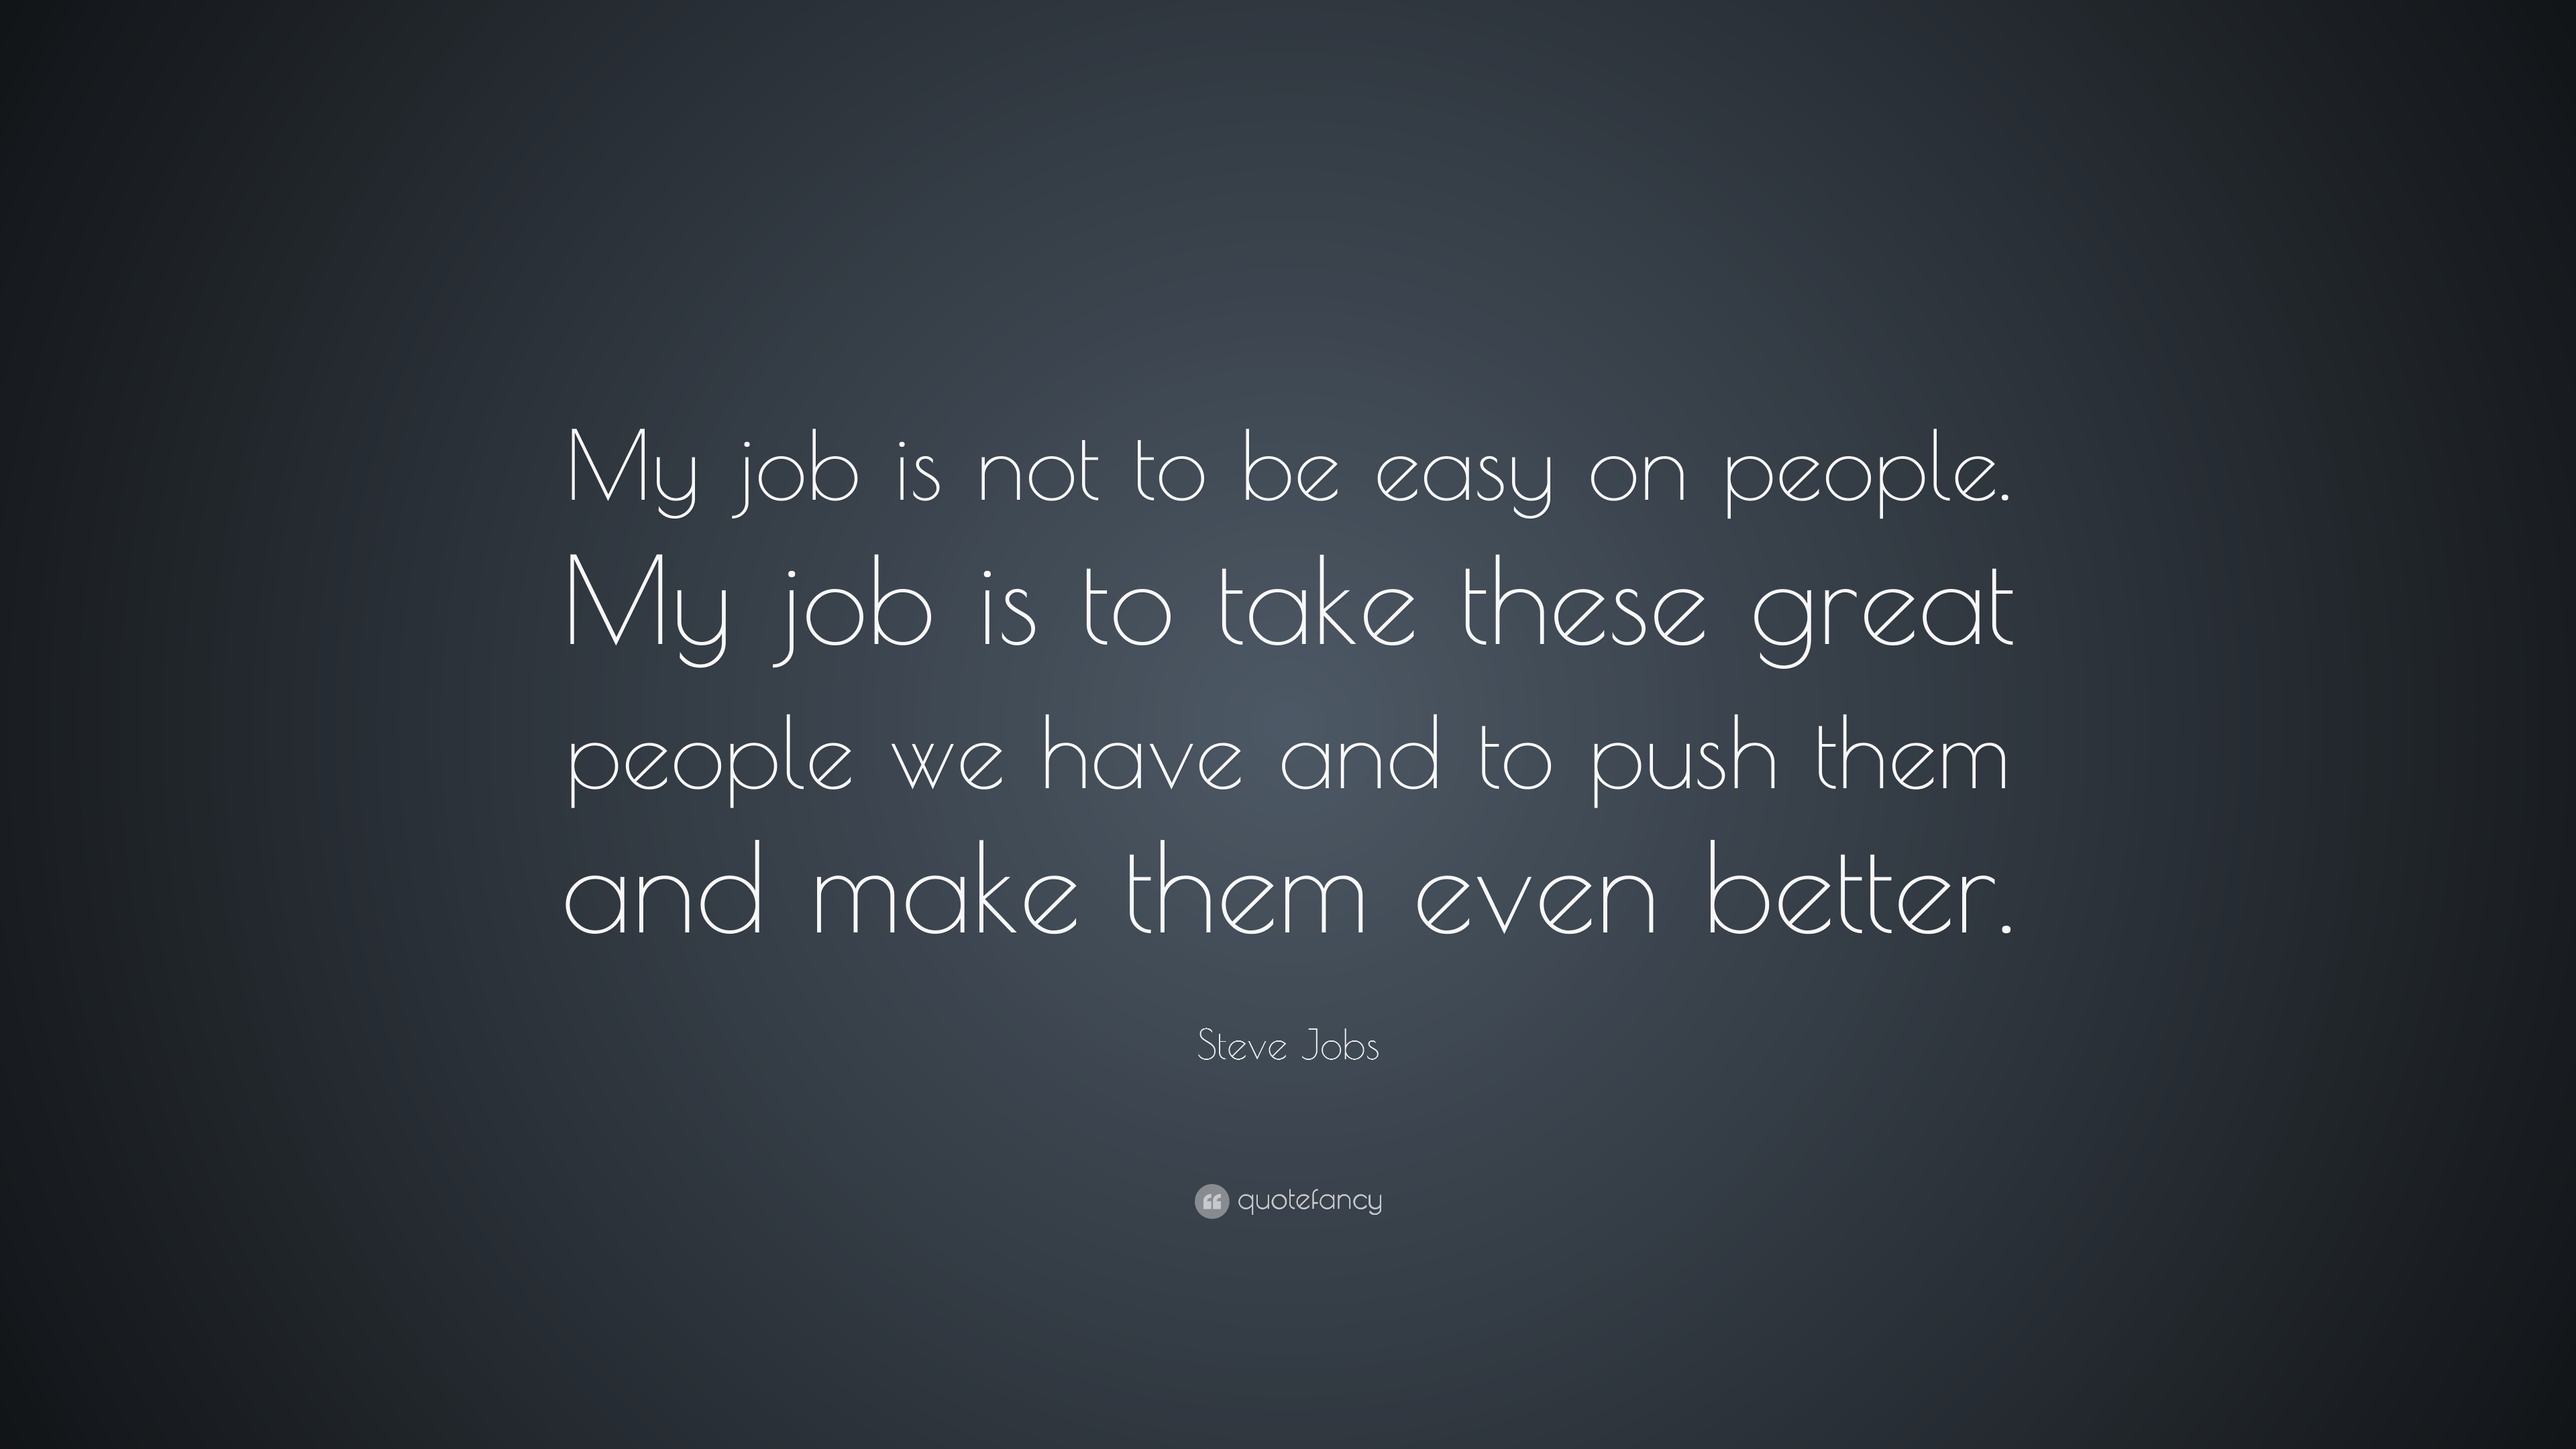 Steve Jobs Quotes (29 wallpapers) - Quotefancy